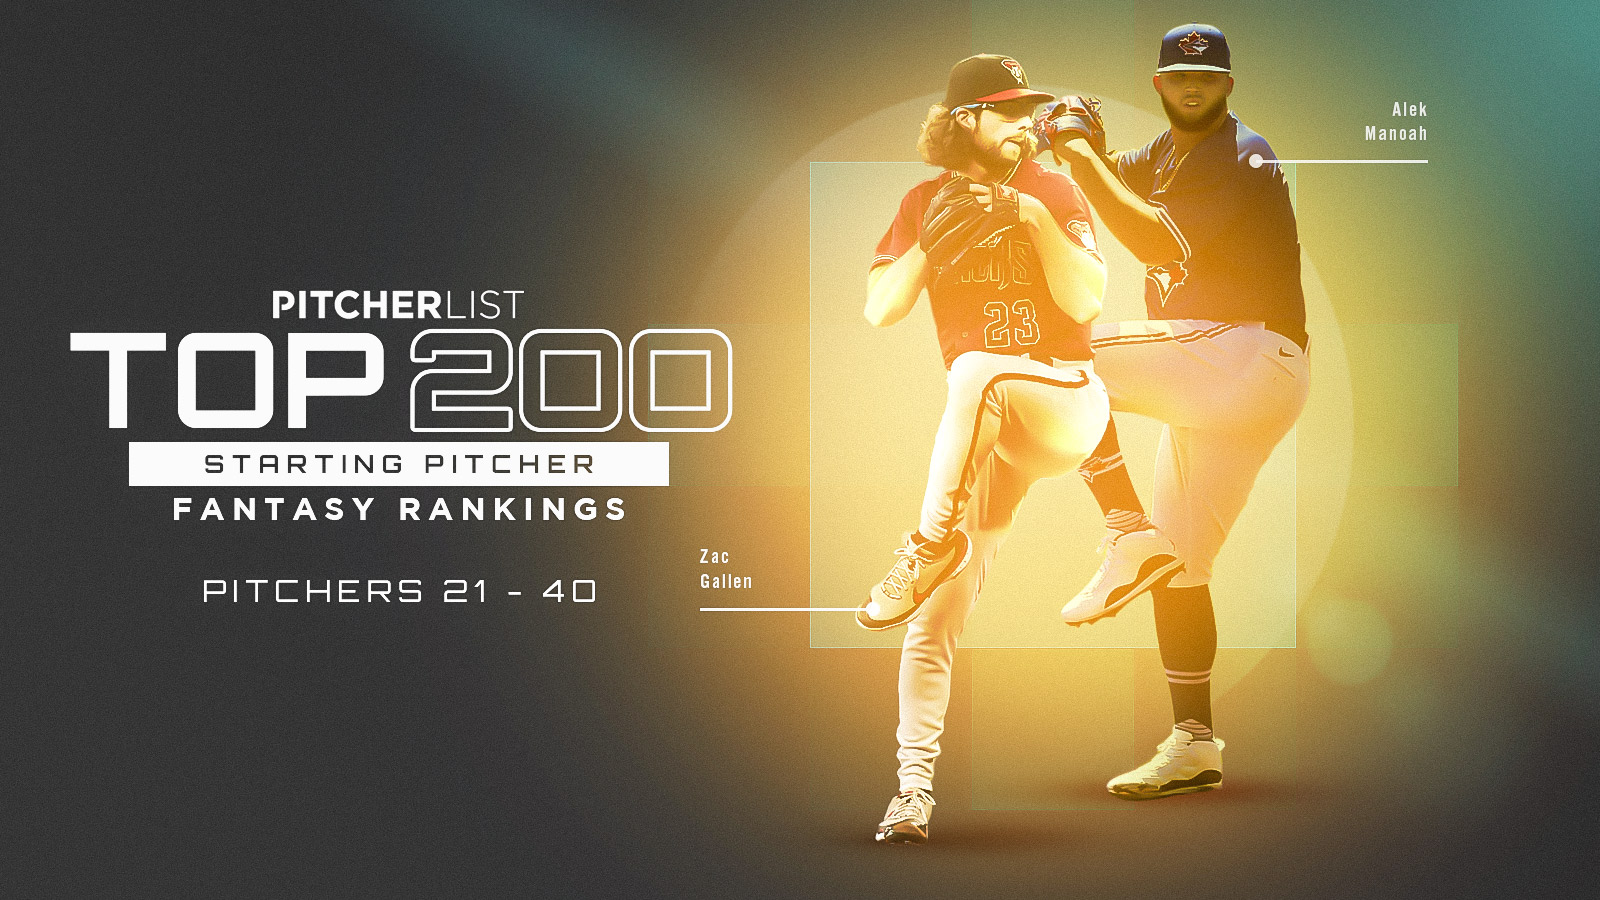 MLB roundup: Yu Darvish hits strikeout milestone in Padres' win